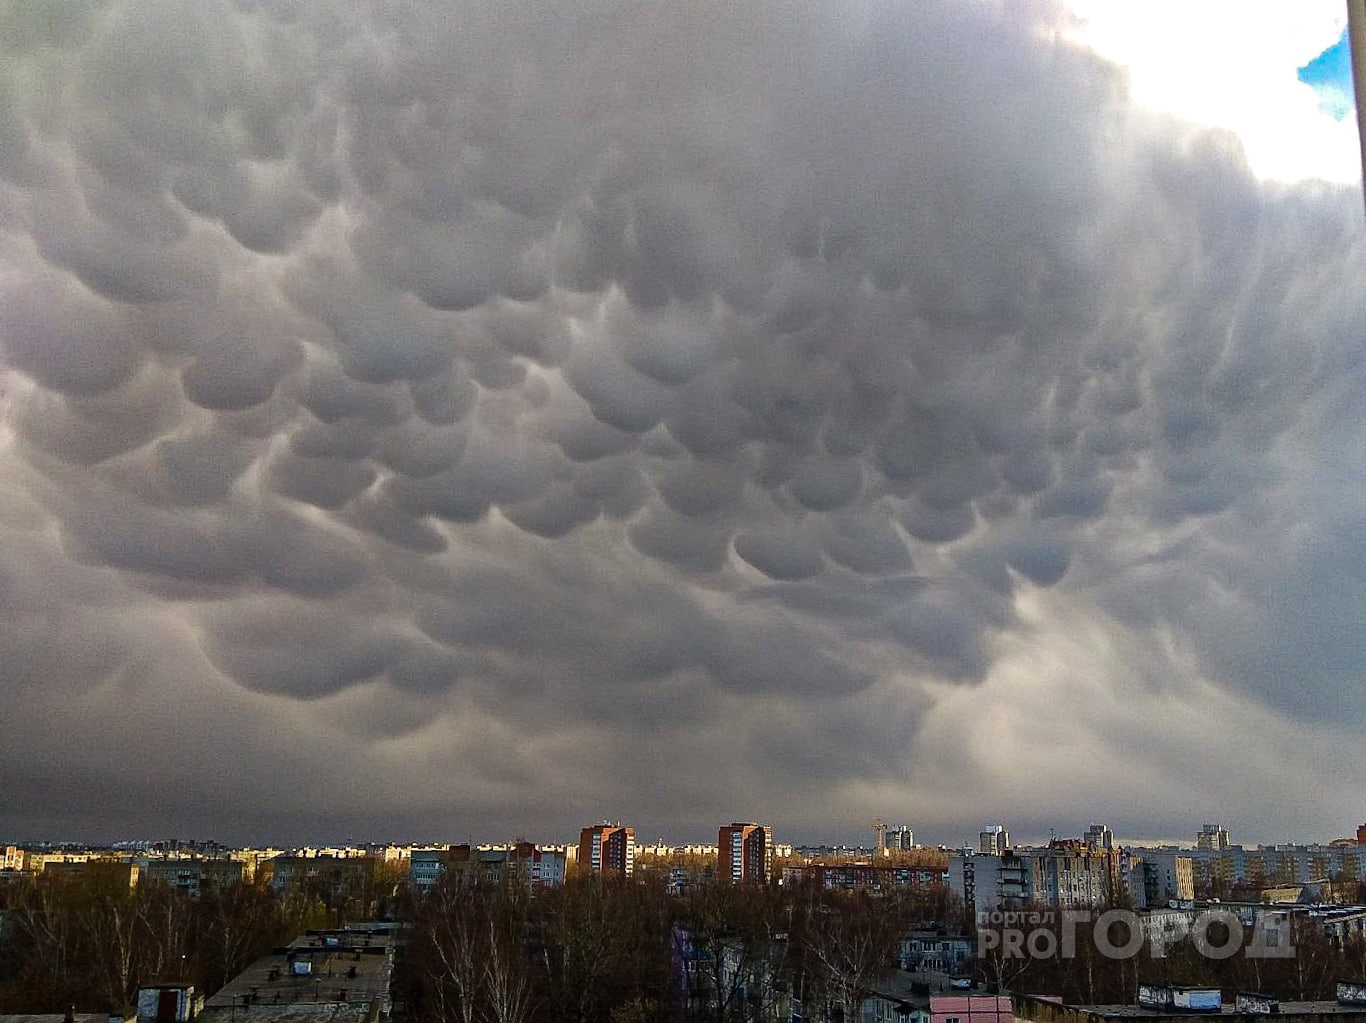 Чебоксарцы фотографируют необычные облака, которые сгустились над городом